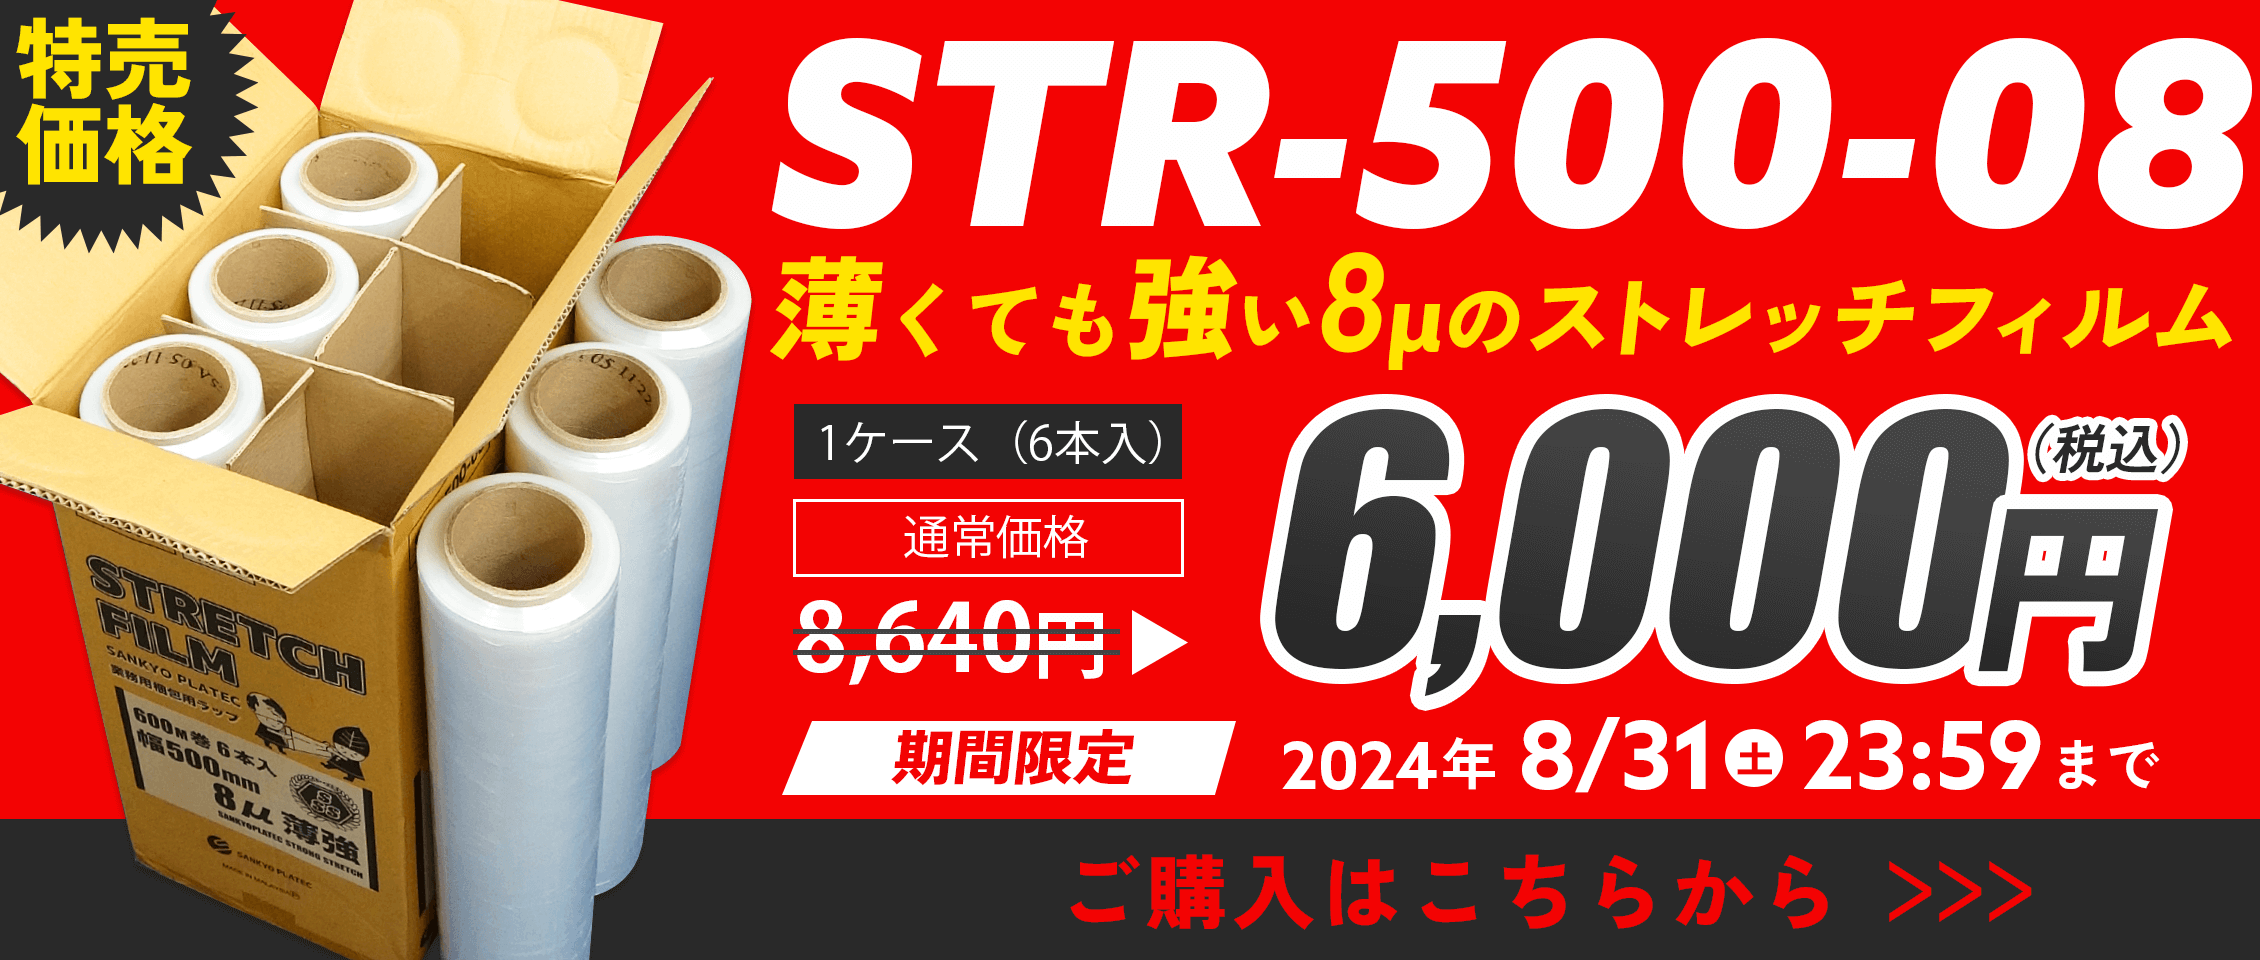 202406_本店_STR-500-08特売